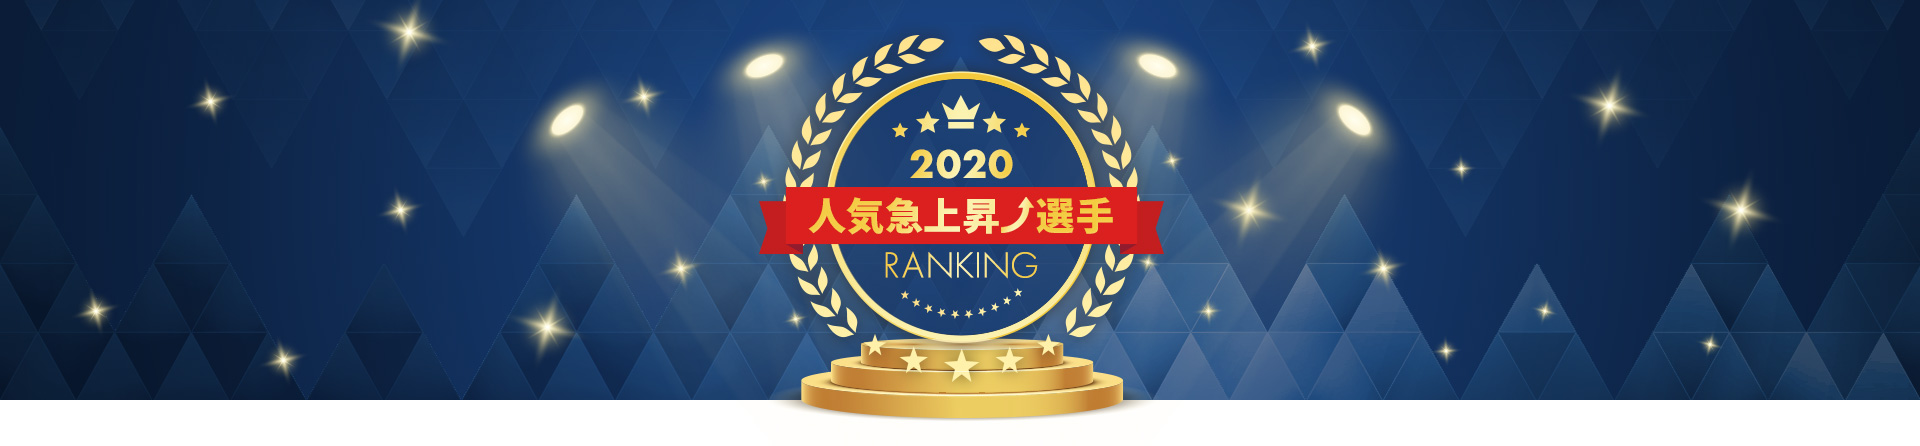 2020年 人気急上昇選手ランキング TOP10